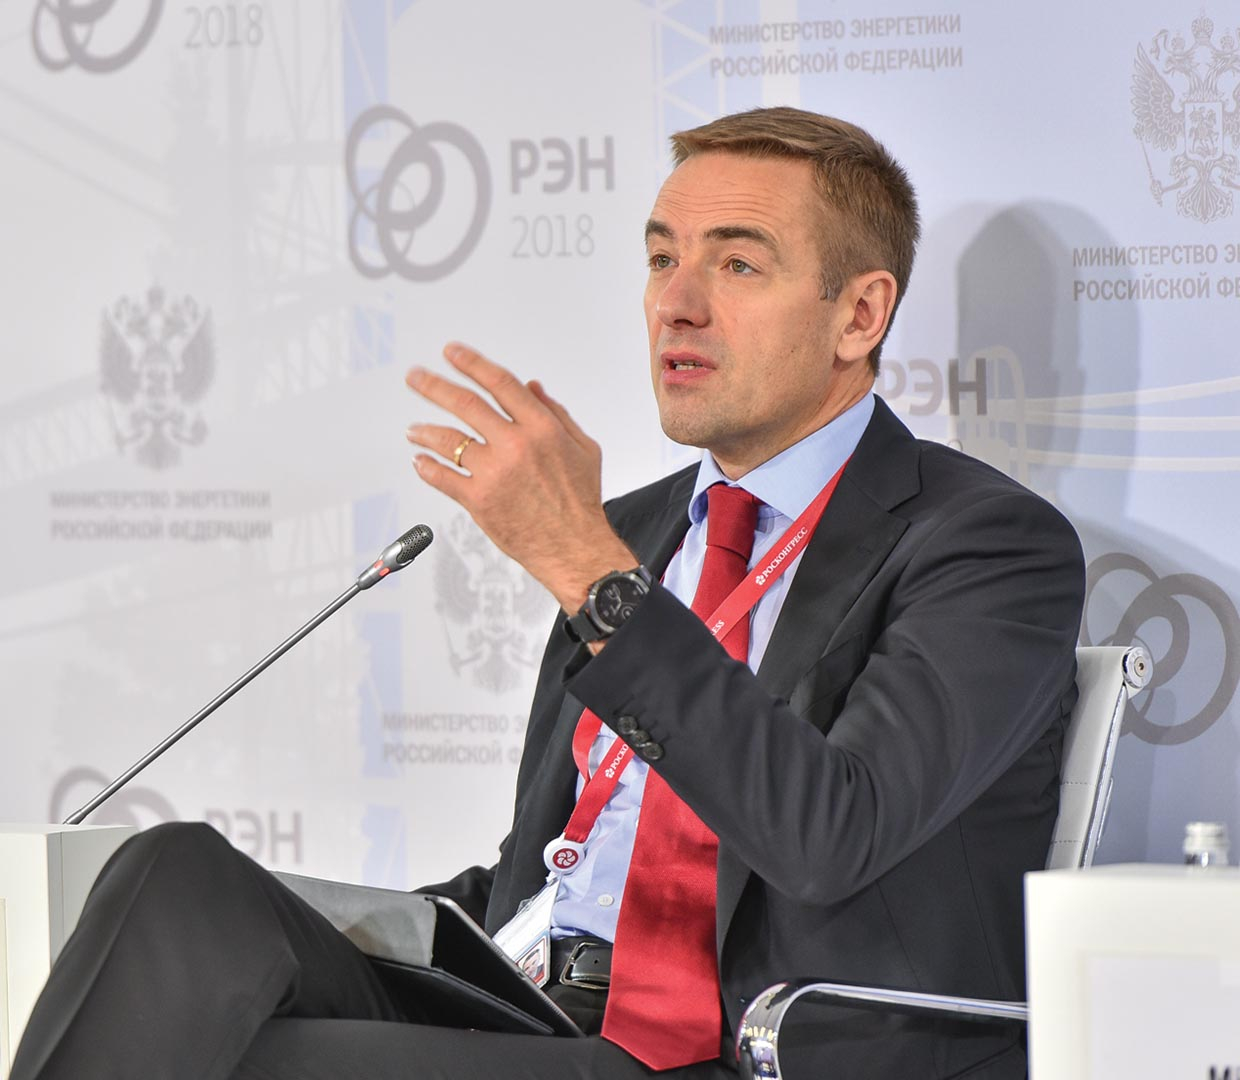 Виктор Евтухов, статс-секретарь — заместитель министра промышленности и торговли Российской Федерации